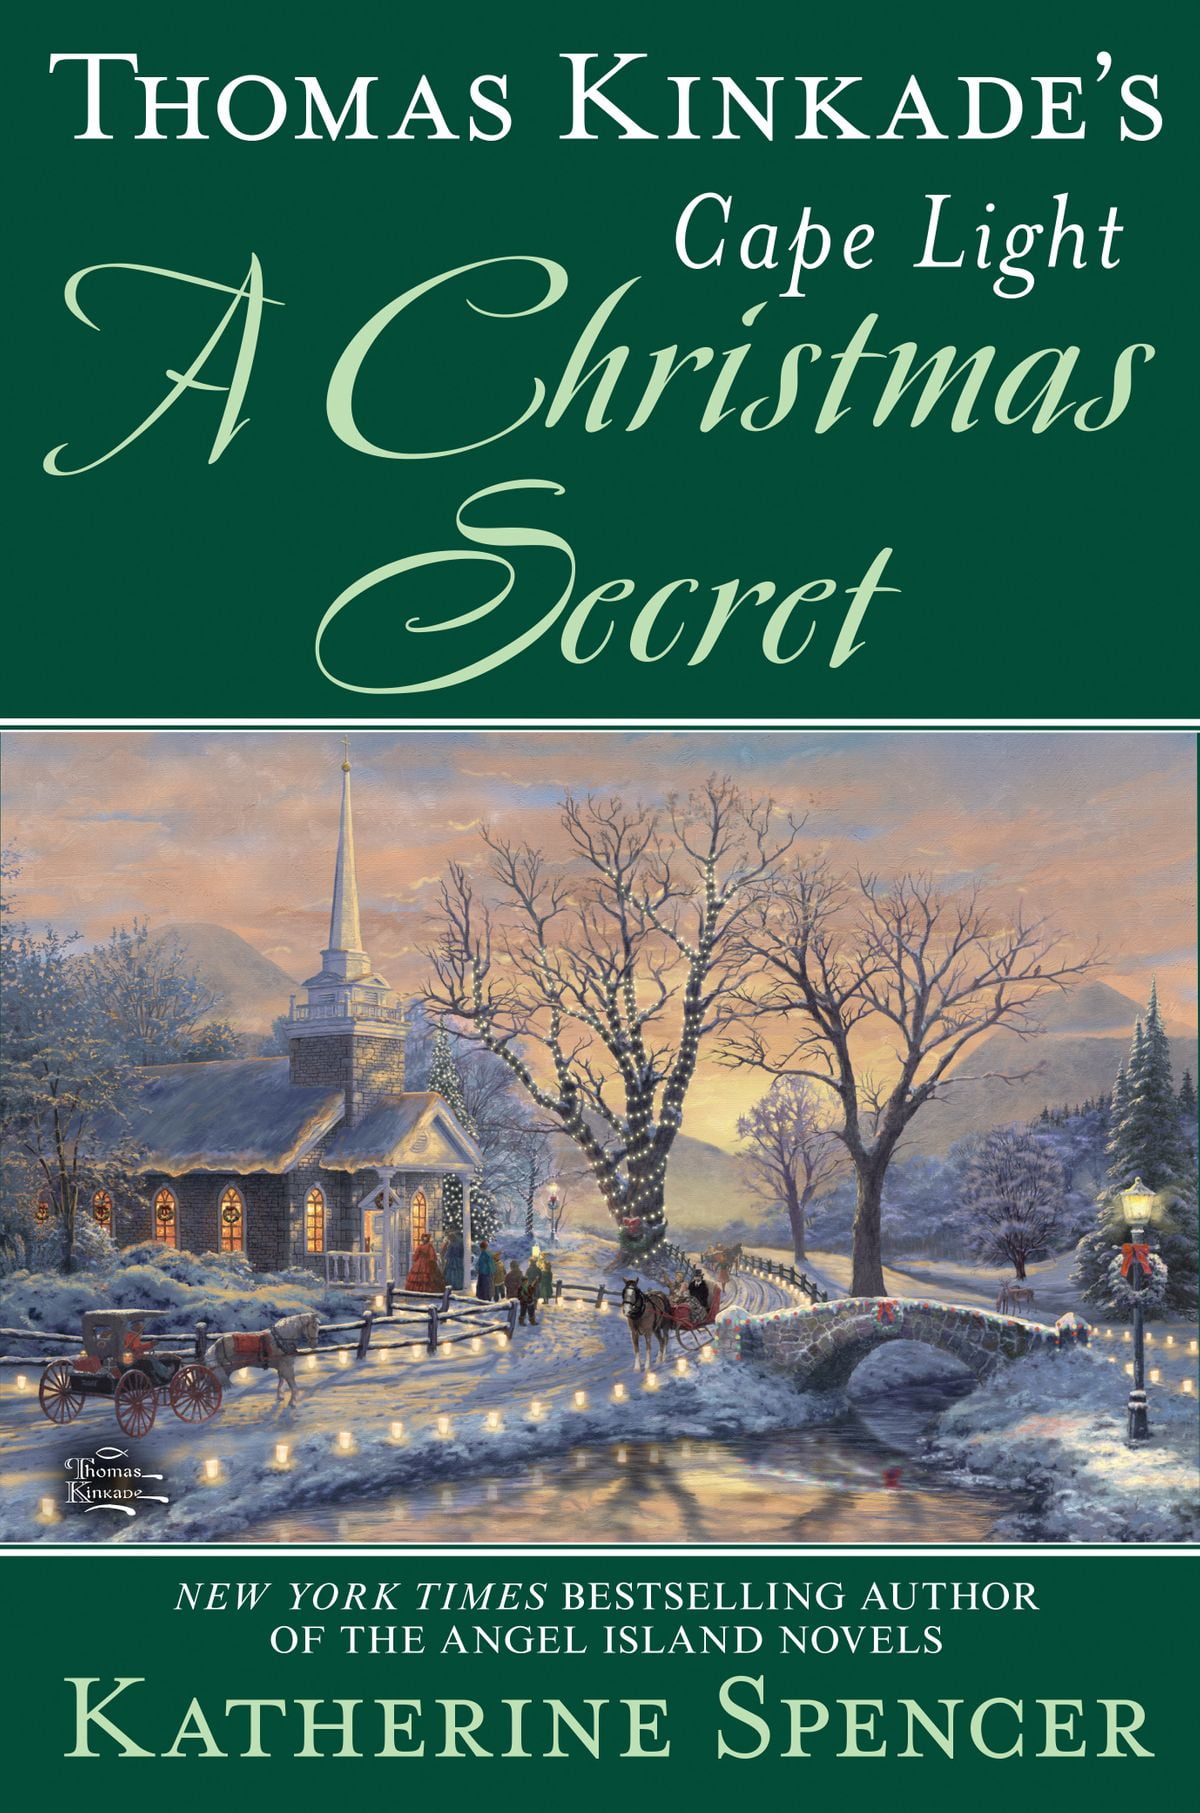 Thomas Kinkade's Cape Light: A Christmas Secret - eBook - Walmart.com.